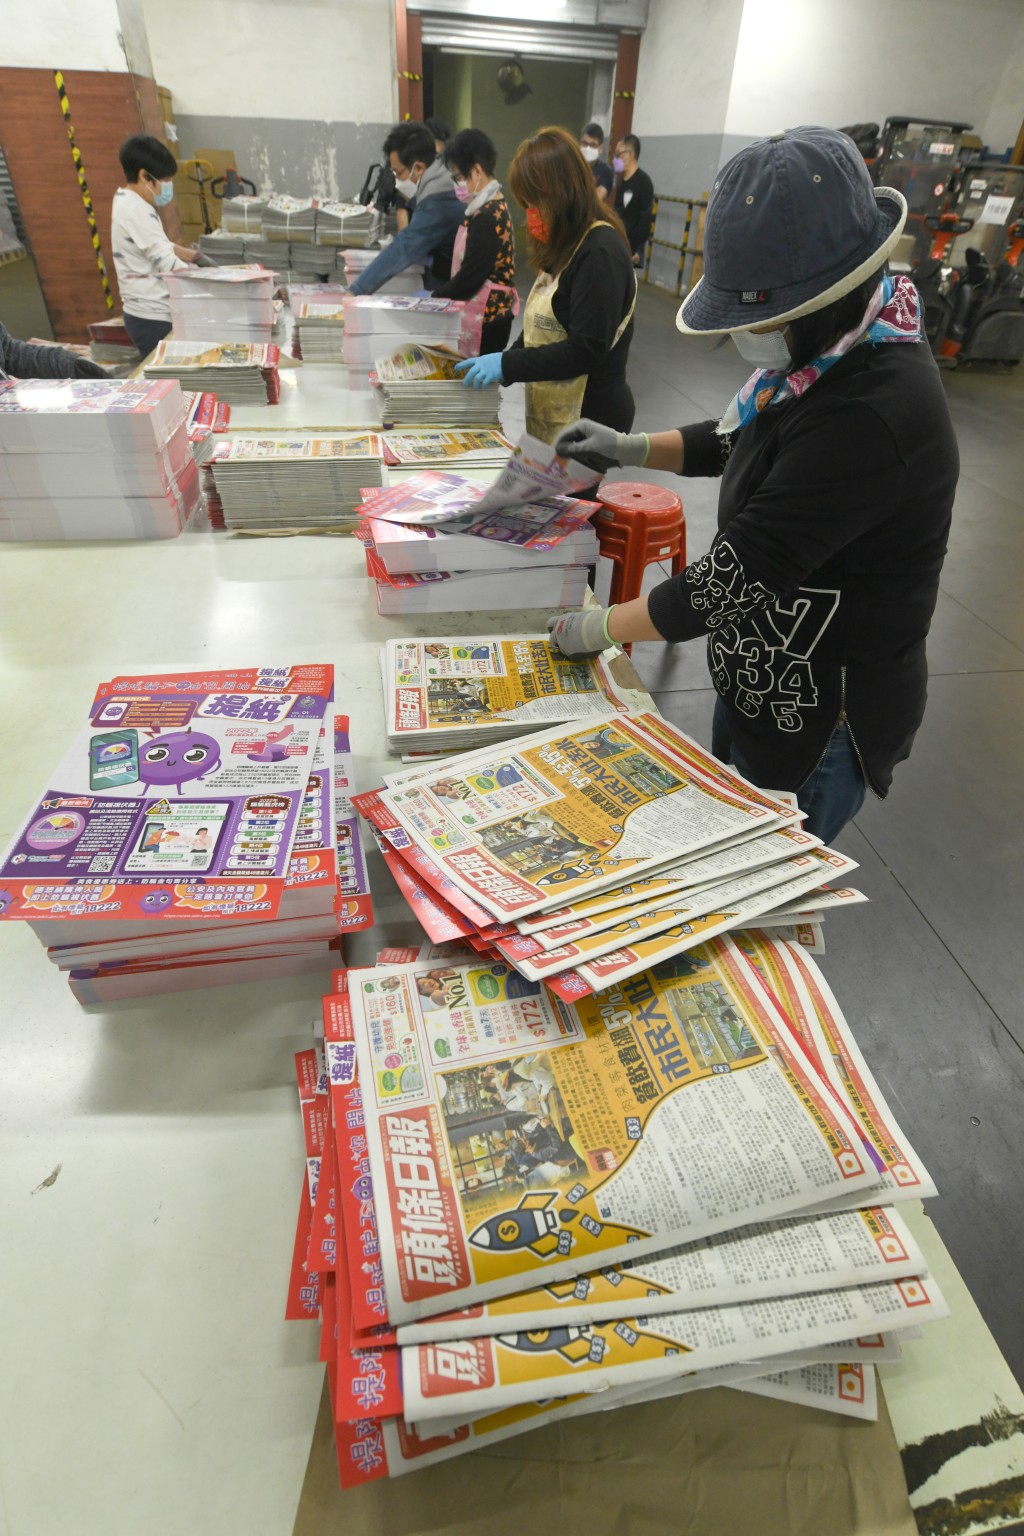 印制工人将「提纸」加进两份免费报纸内。